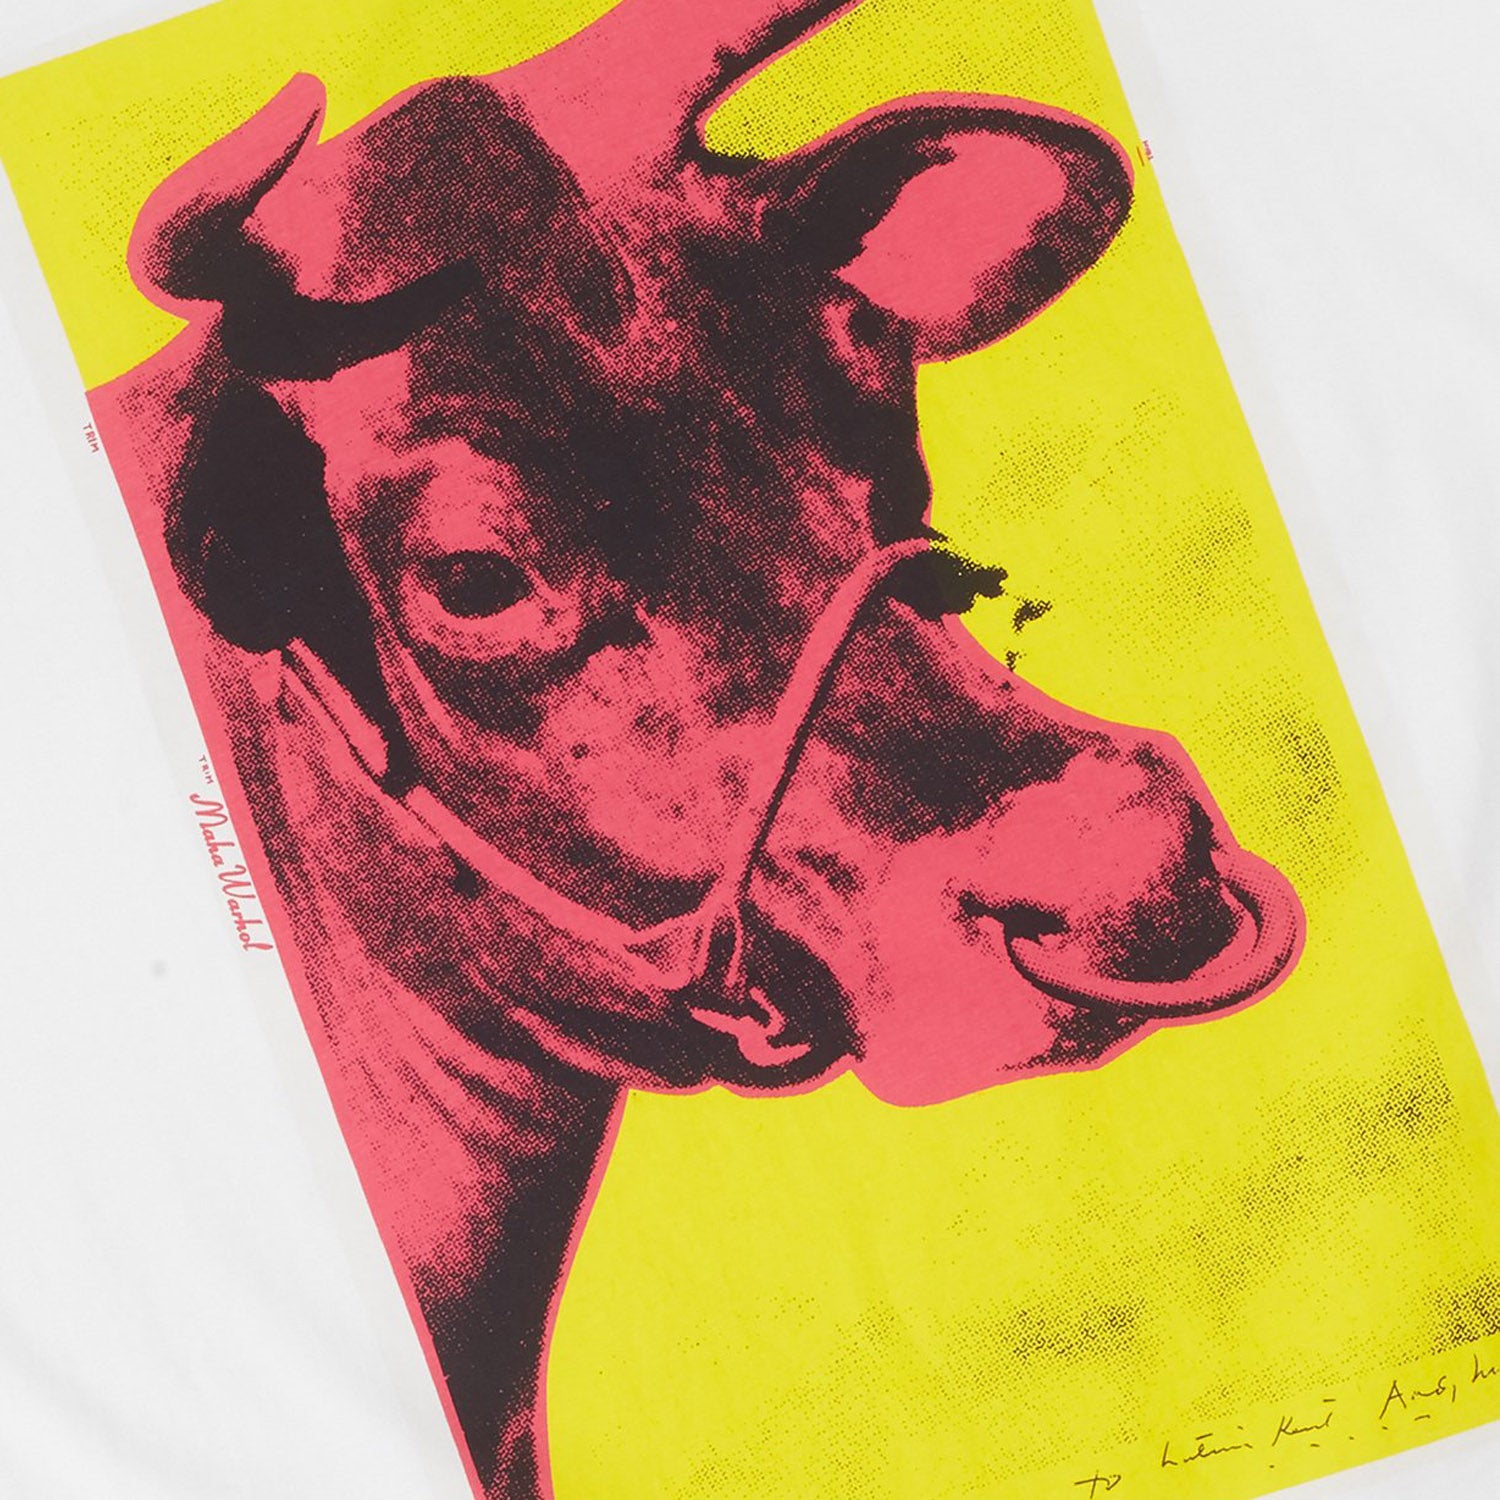 Maharishi Warhol Lunar OX T-Shirt Organic Jersey 190 White